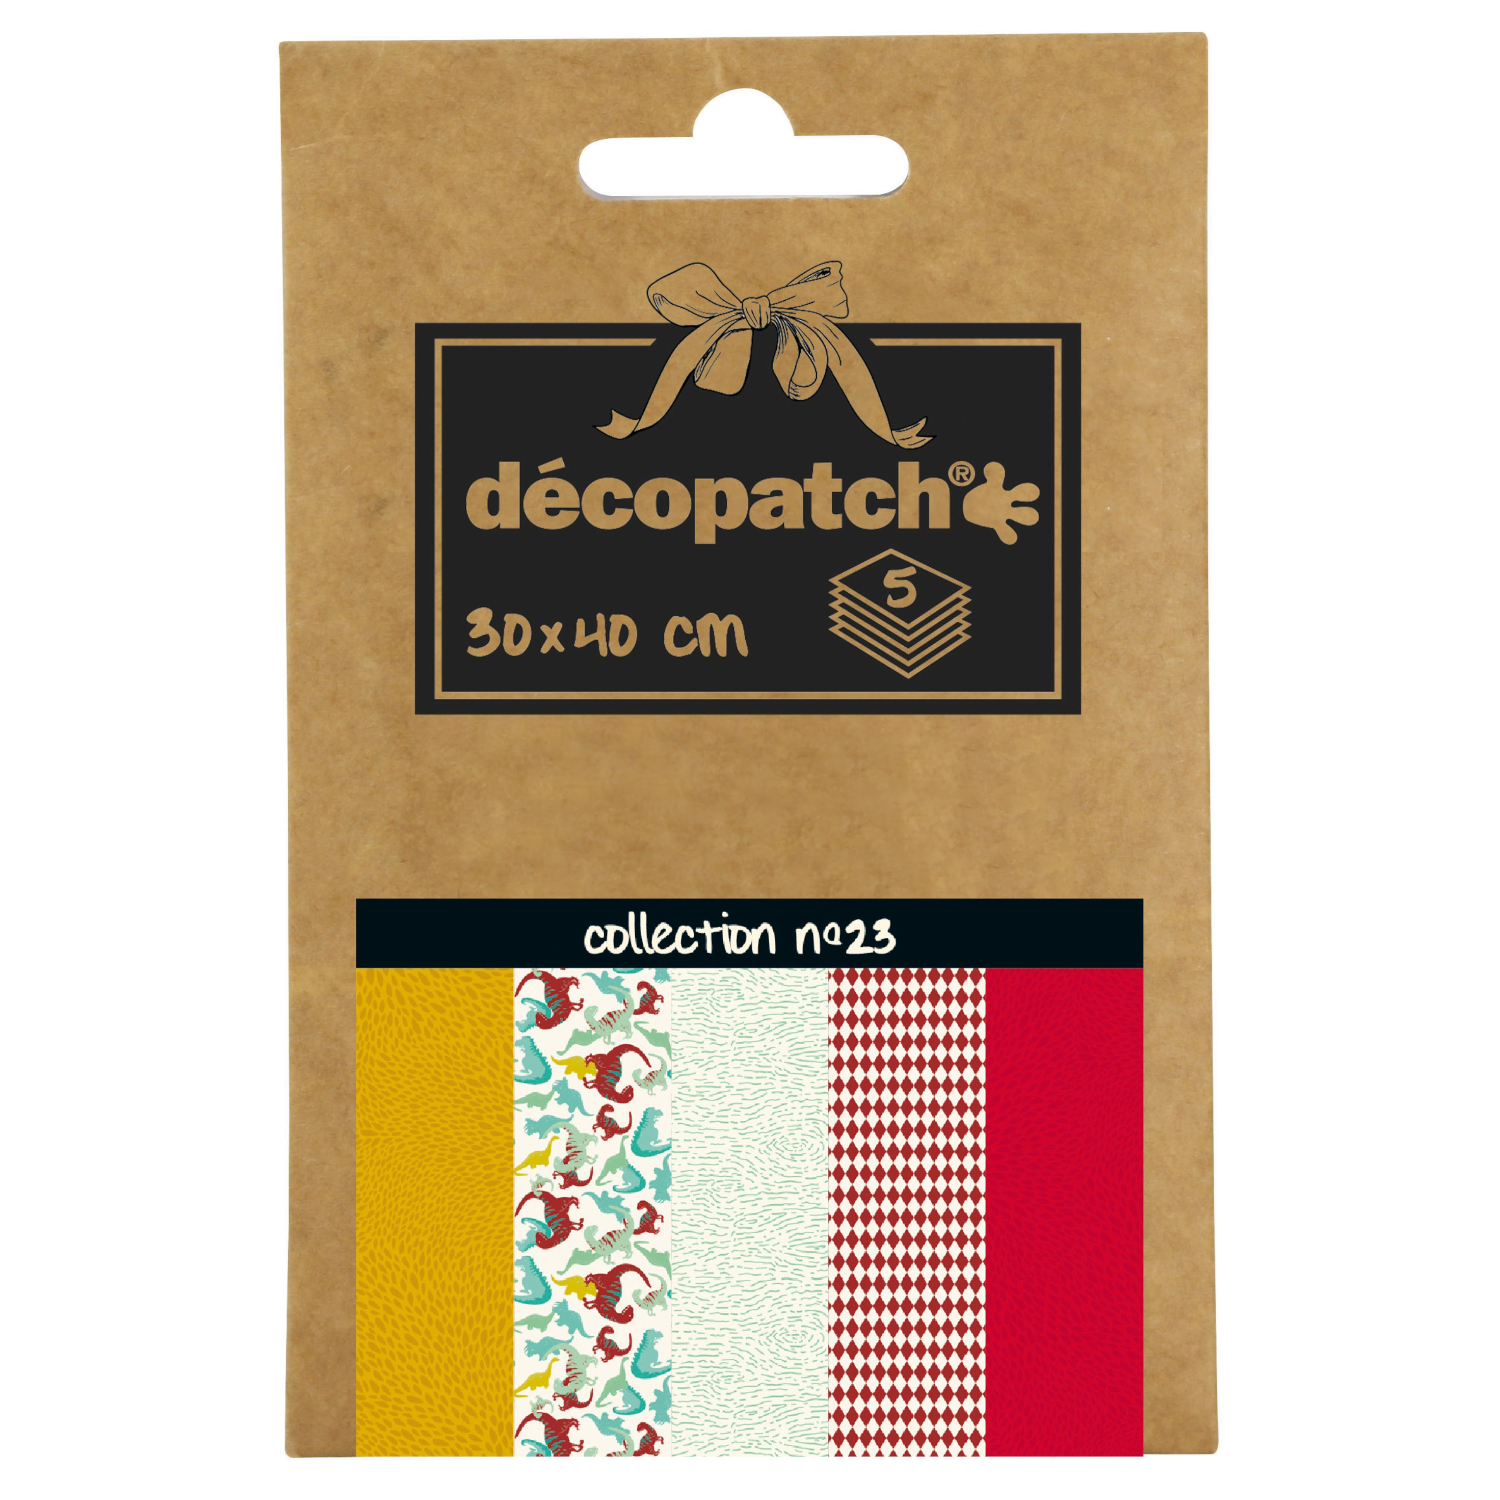 NEU Decoupage- / Decopatch-Papier Pocket-Sortierung, 5 Bogen 30 x 40 cm, Motive: 654, 736, 737, 738, 724